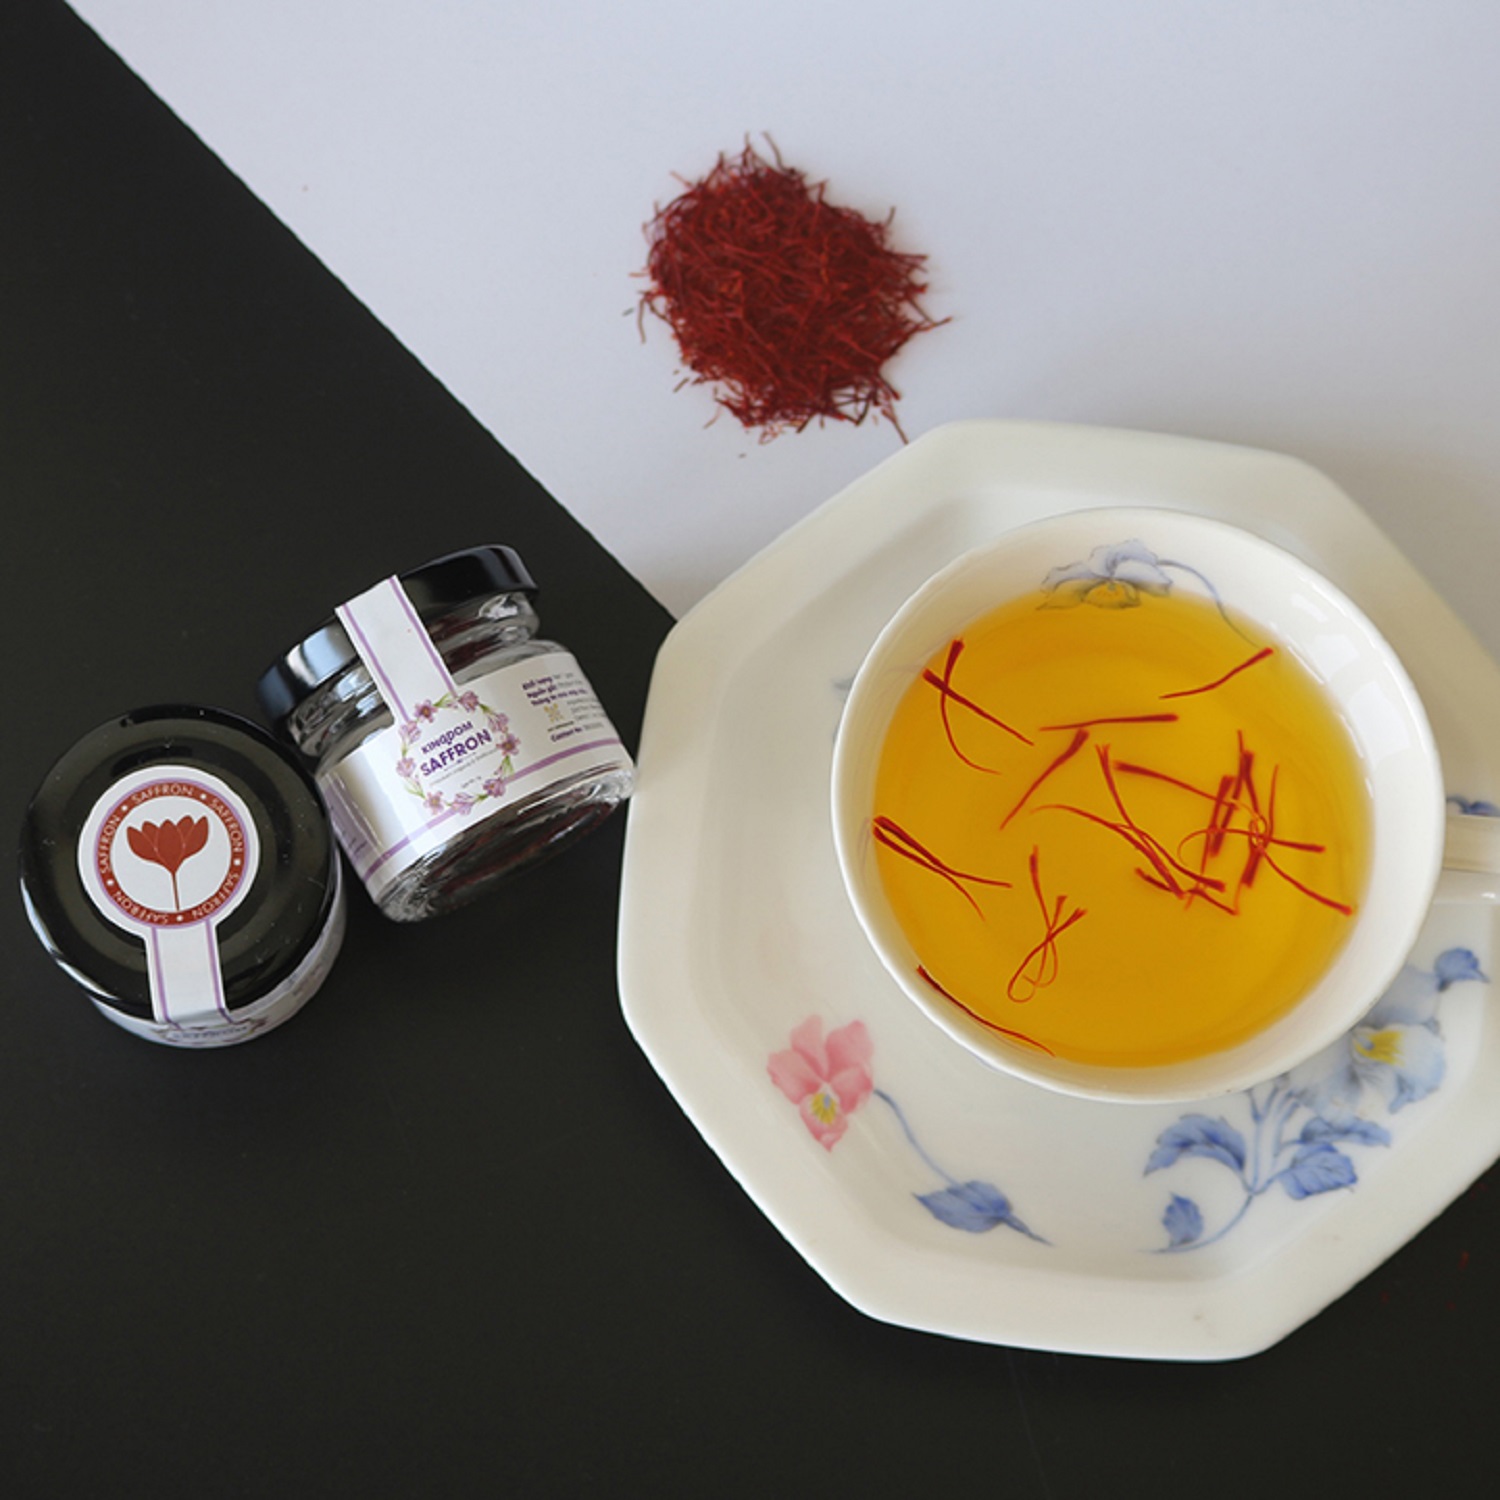 Saffron nhụy hoa nghệ tây Kingdom Herb Iran chính hãng loại thượng hạng hộp 1 gram